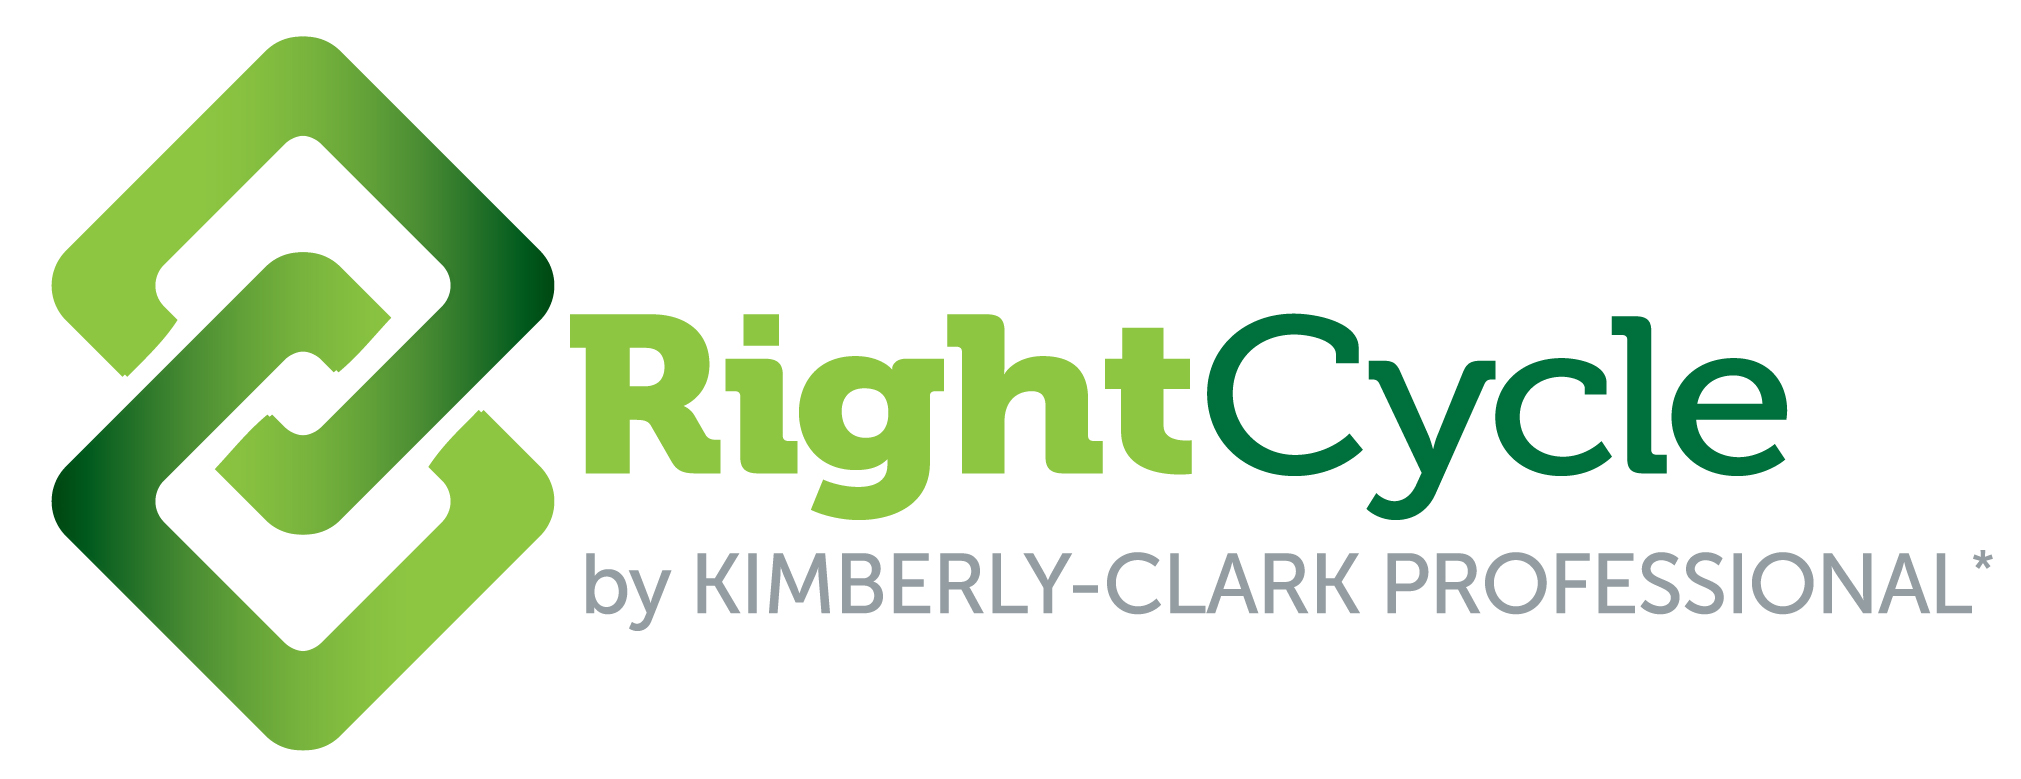 Kimberly Clark News - Media Library